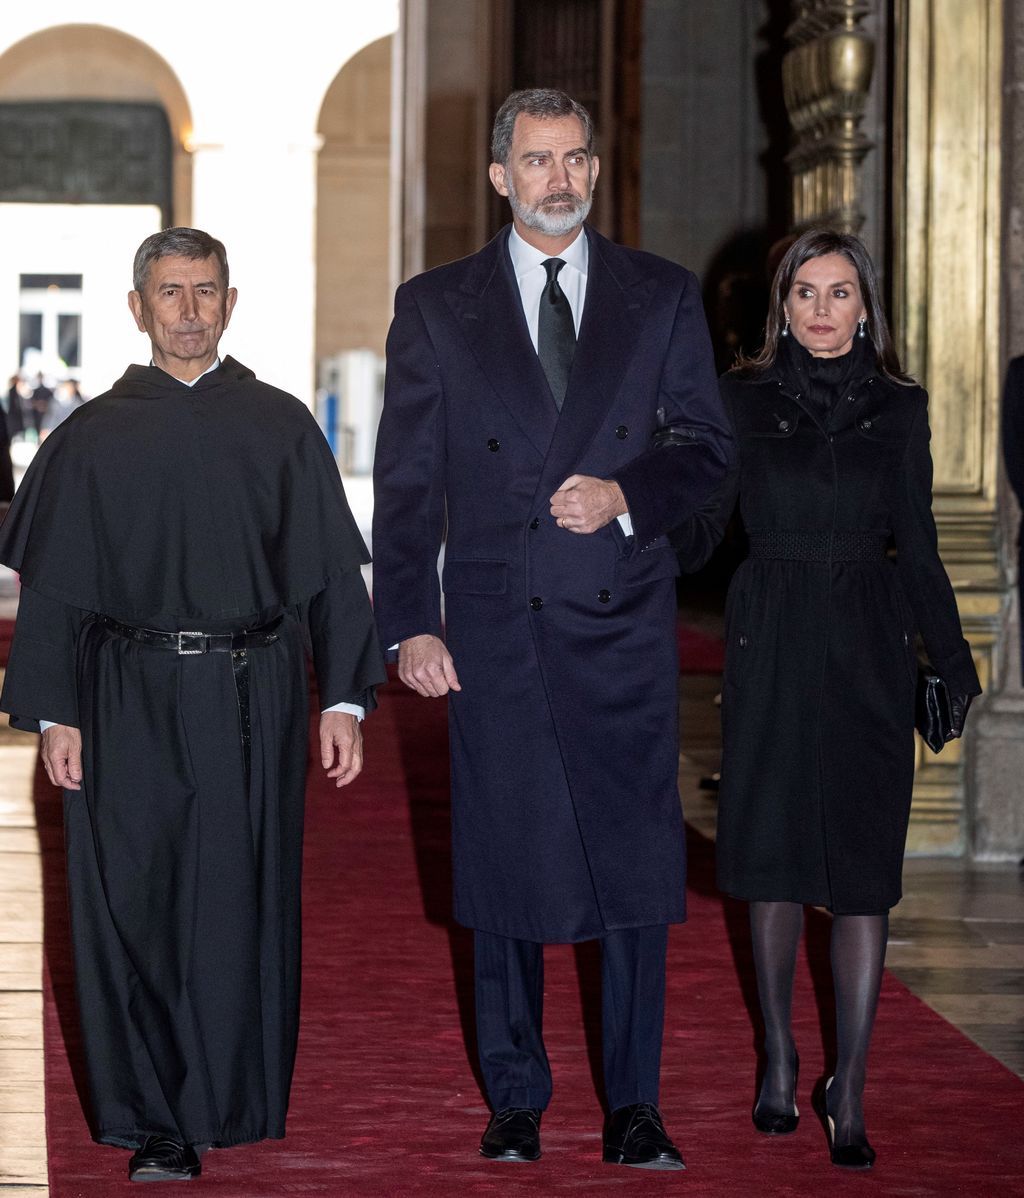 De la infanta Cristina a la baronesa Thyssen: amigos y familia en el funeral de la infanta Pilar de Borbón